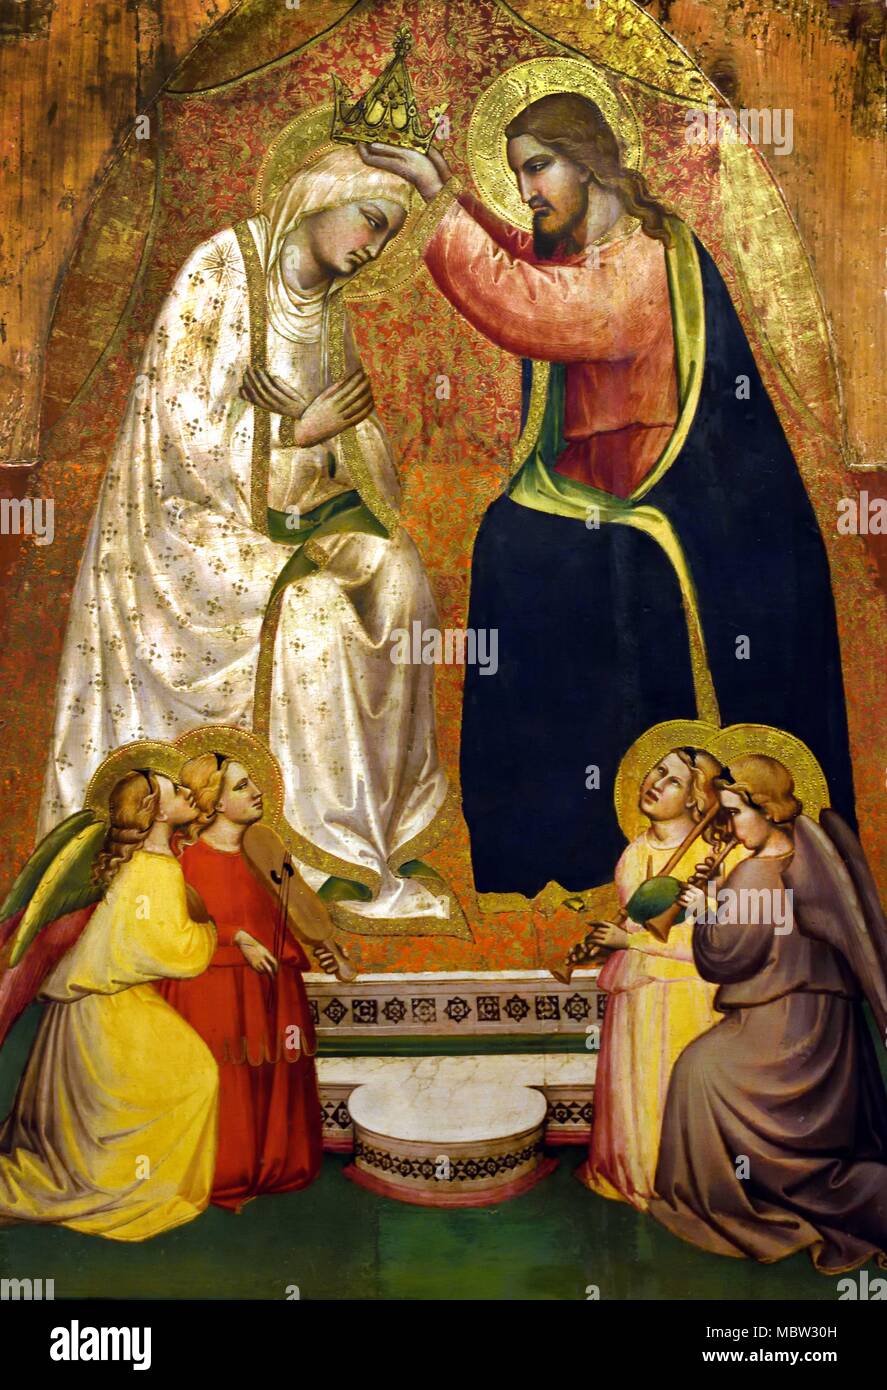 Incoronazione della Vergine ed Angeli musicanti - Krönung der Jungfrau und Musiker Engel von Spinello Aretino 14. Jahrhundert Italien Italienisch Stockfoto